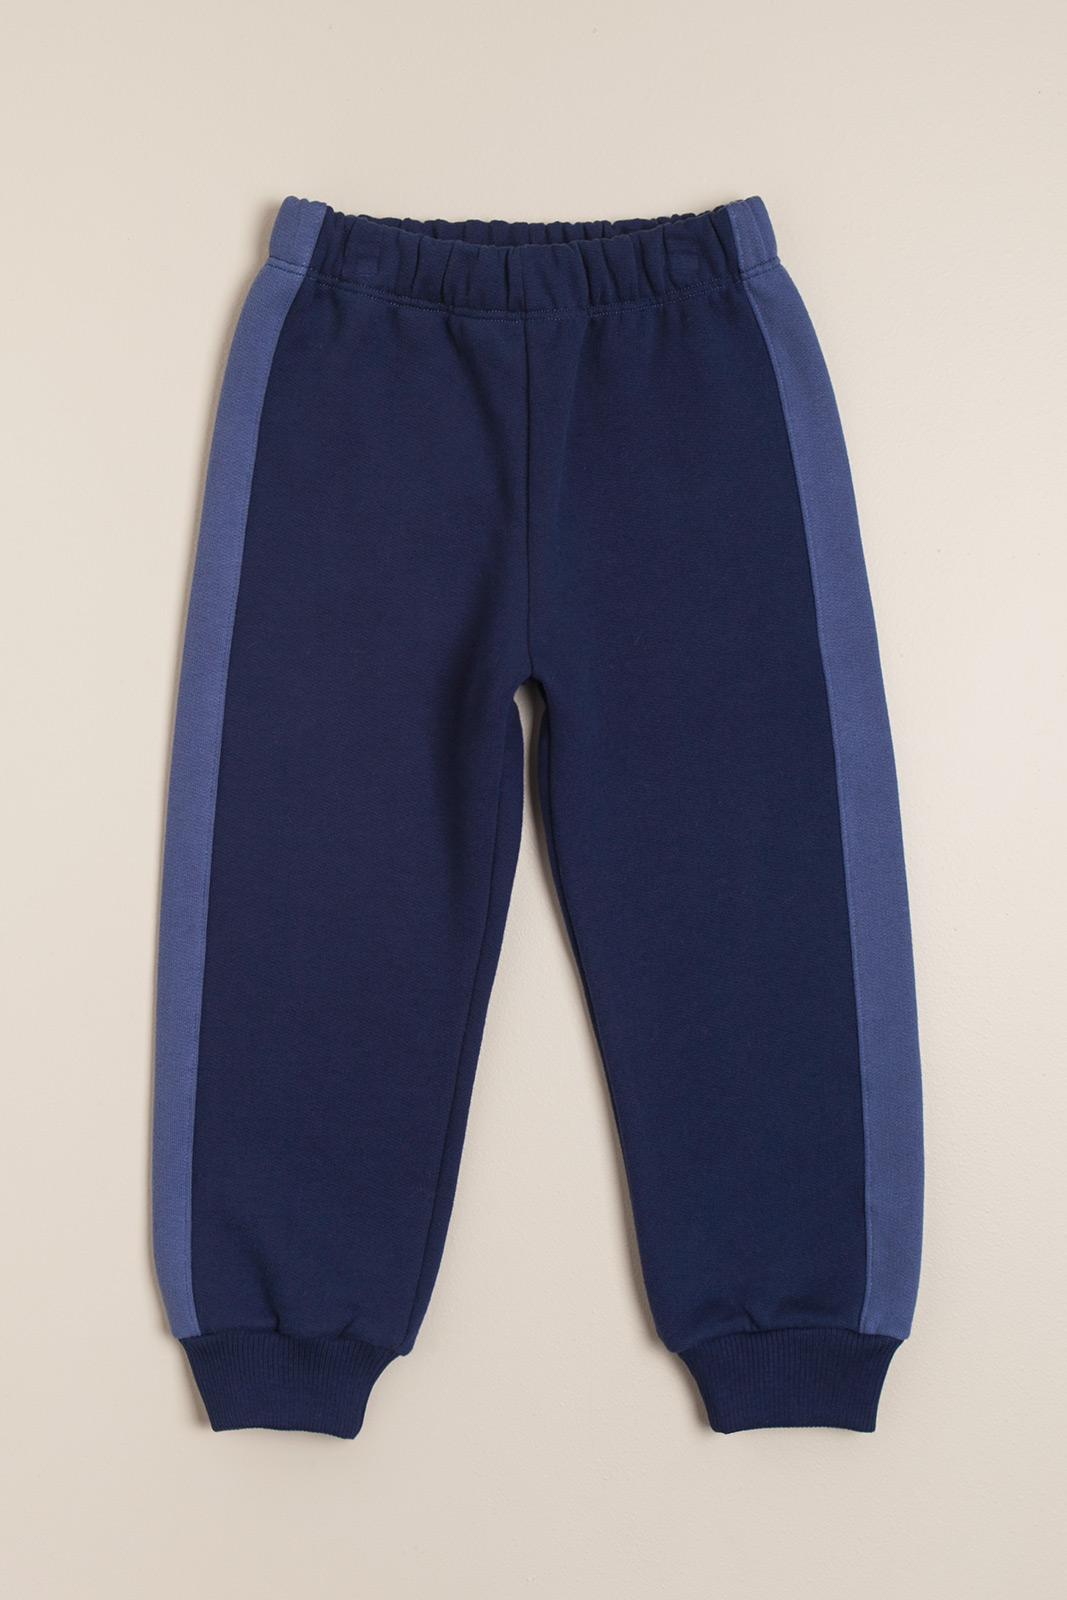 Pantalon de frisa con puño azul